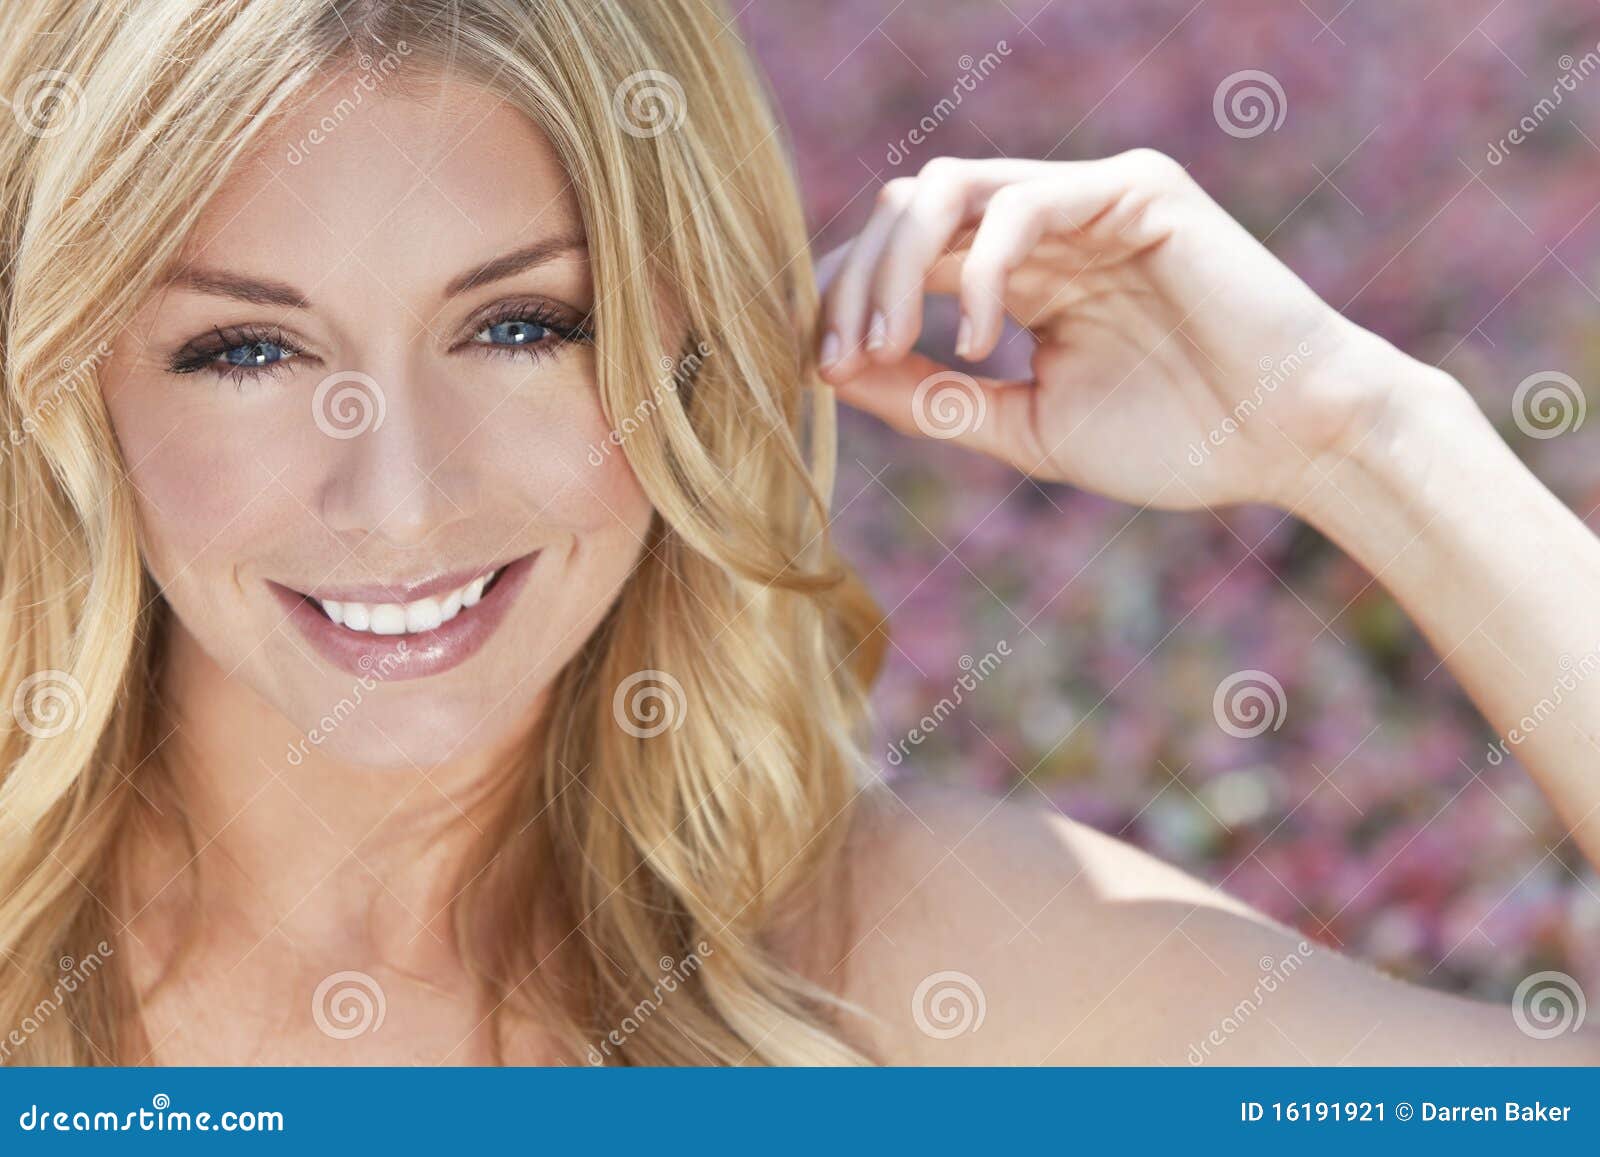 Naturlich Schone Blonde Frau Mit Blauen Augen Stockbild Bild Von Augen Frau 16191921